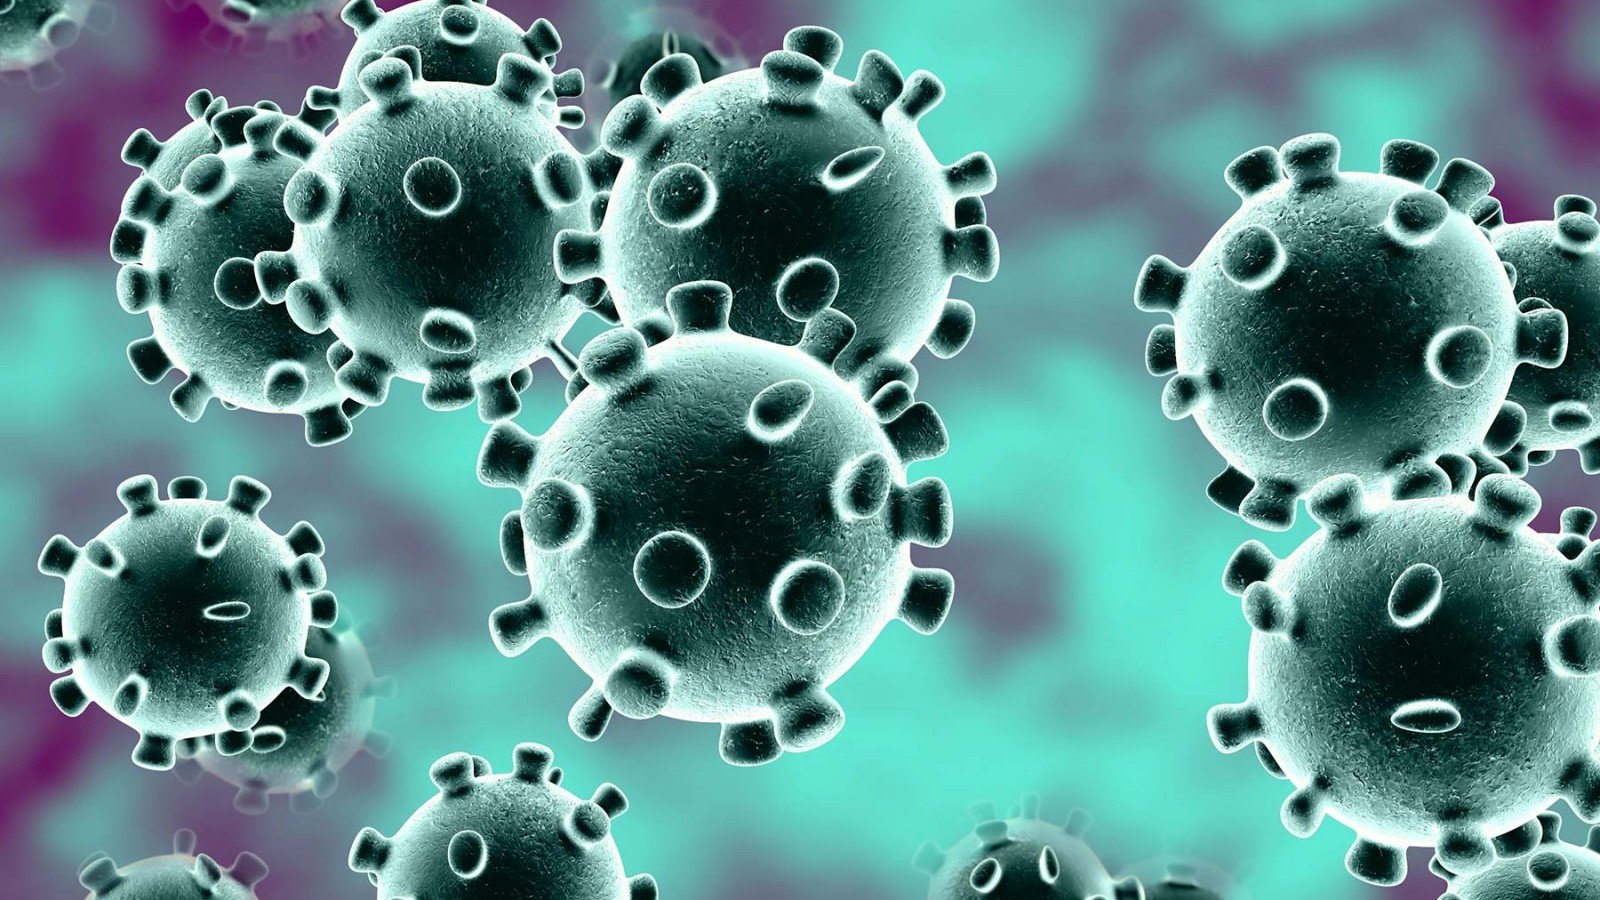 Wat Als Ik Klachten Heb Die Kunnen Wijzen Op Het Coronavirus - Artikel - Artsenpraktijk Hooglede